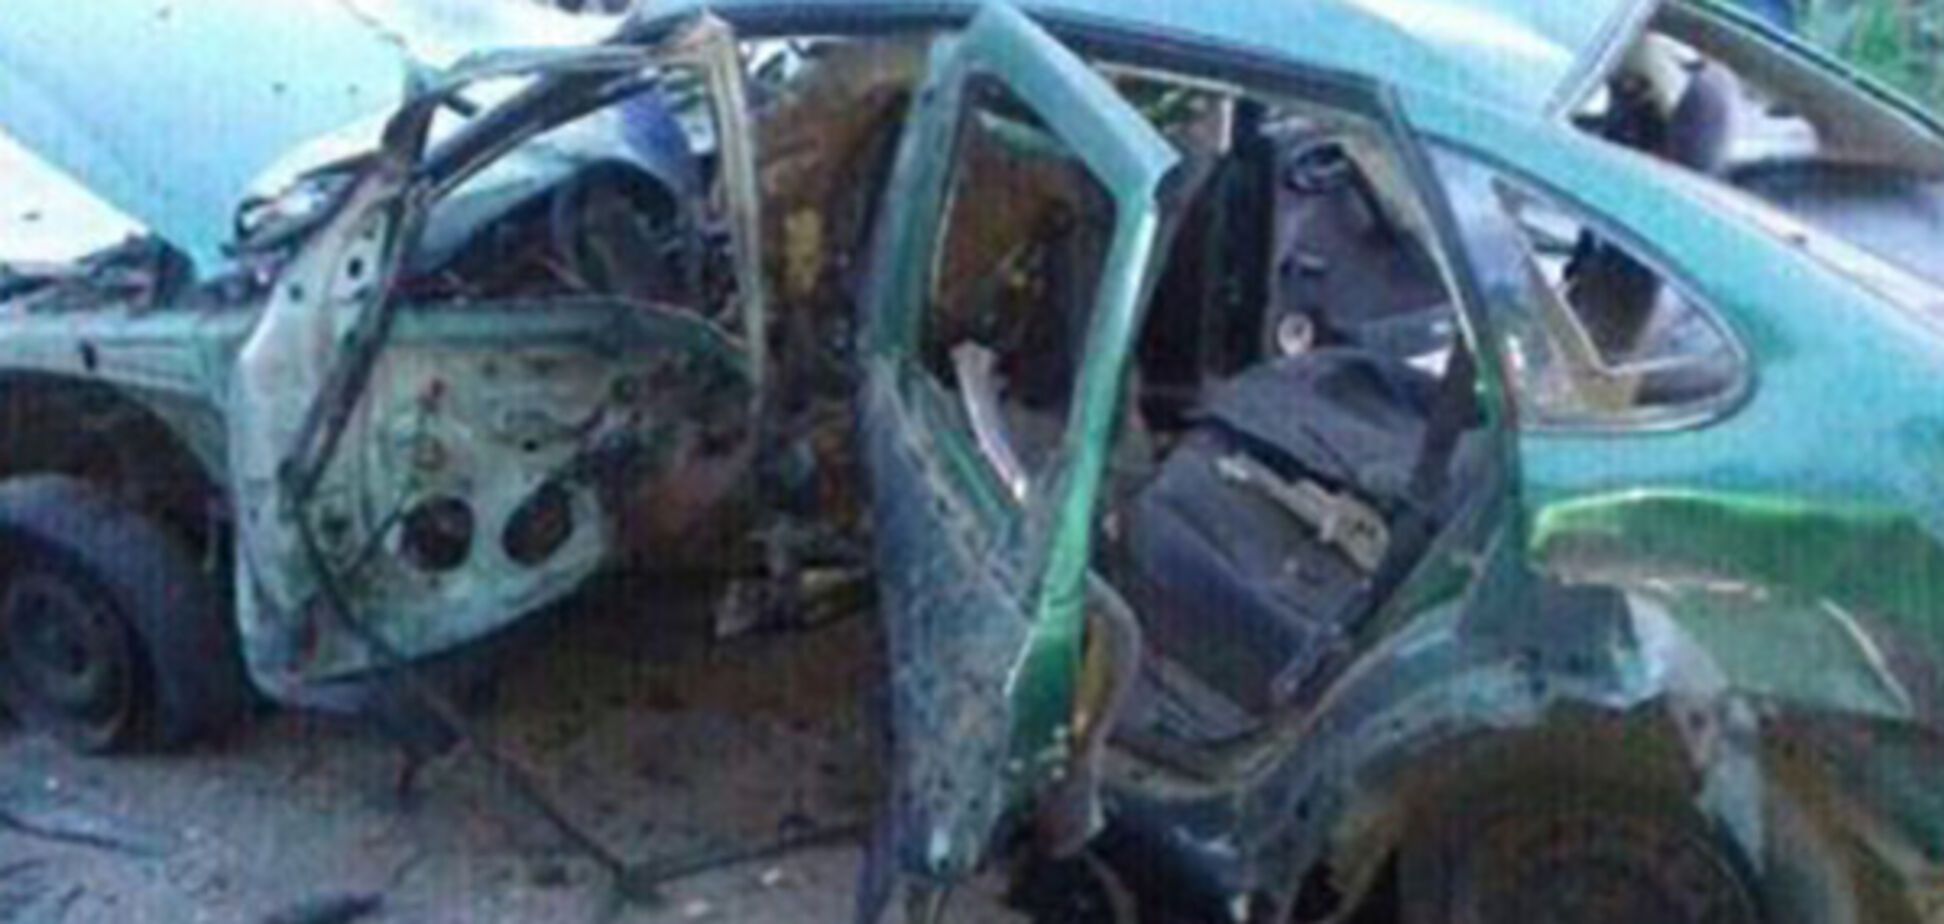 Жуткие подробности взрыва авто СБУ на Донбассе